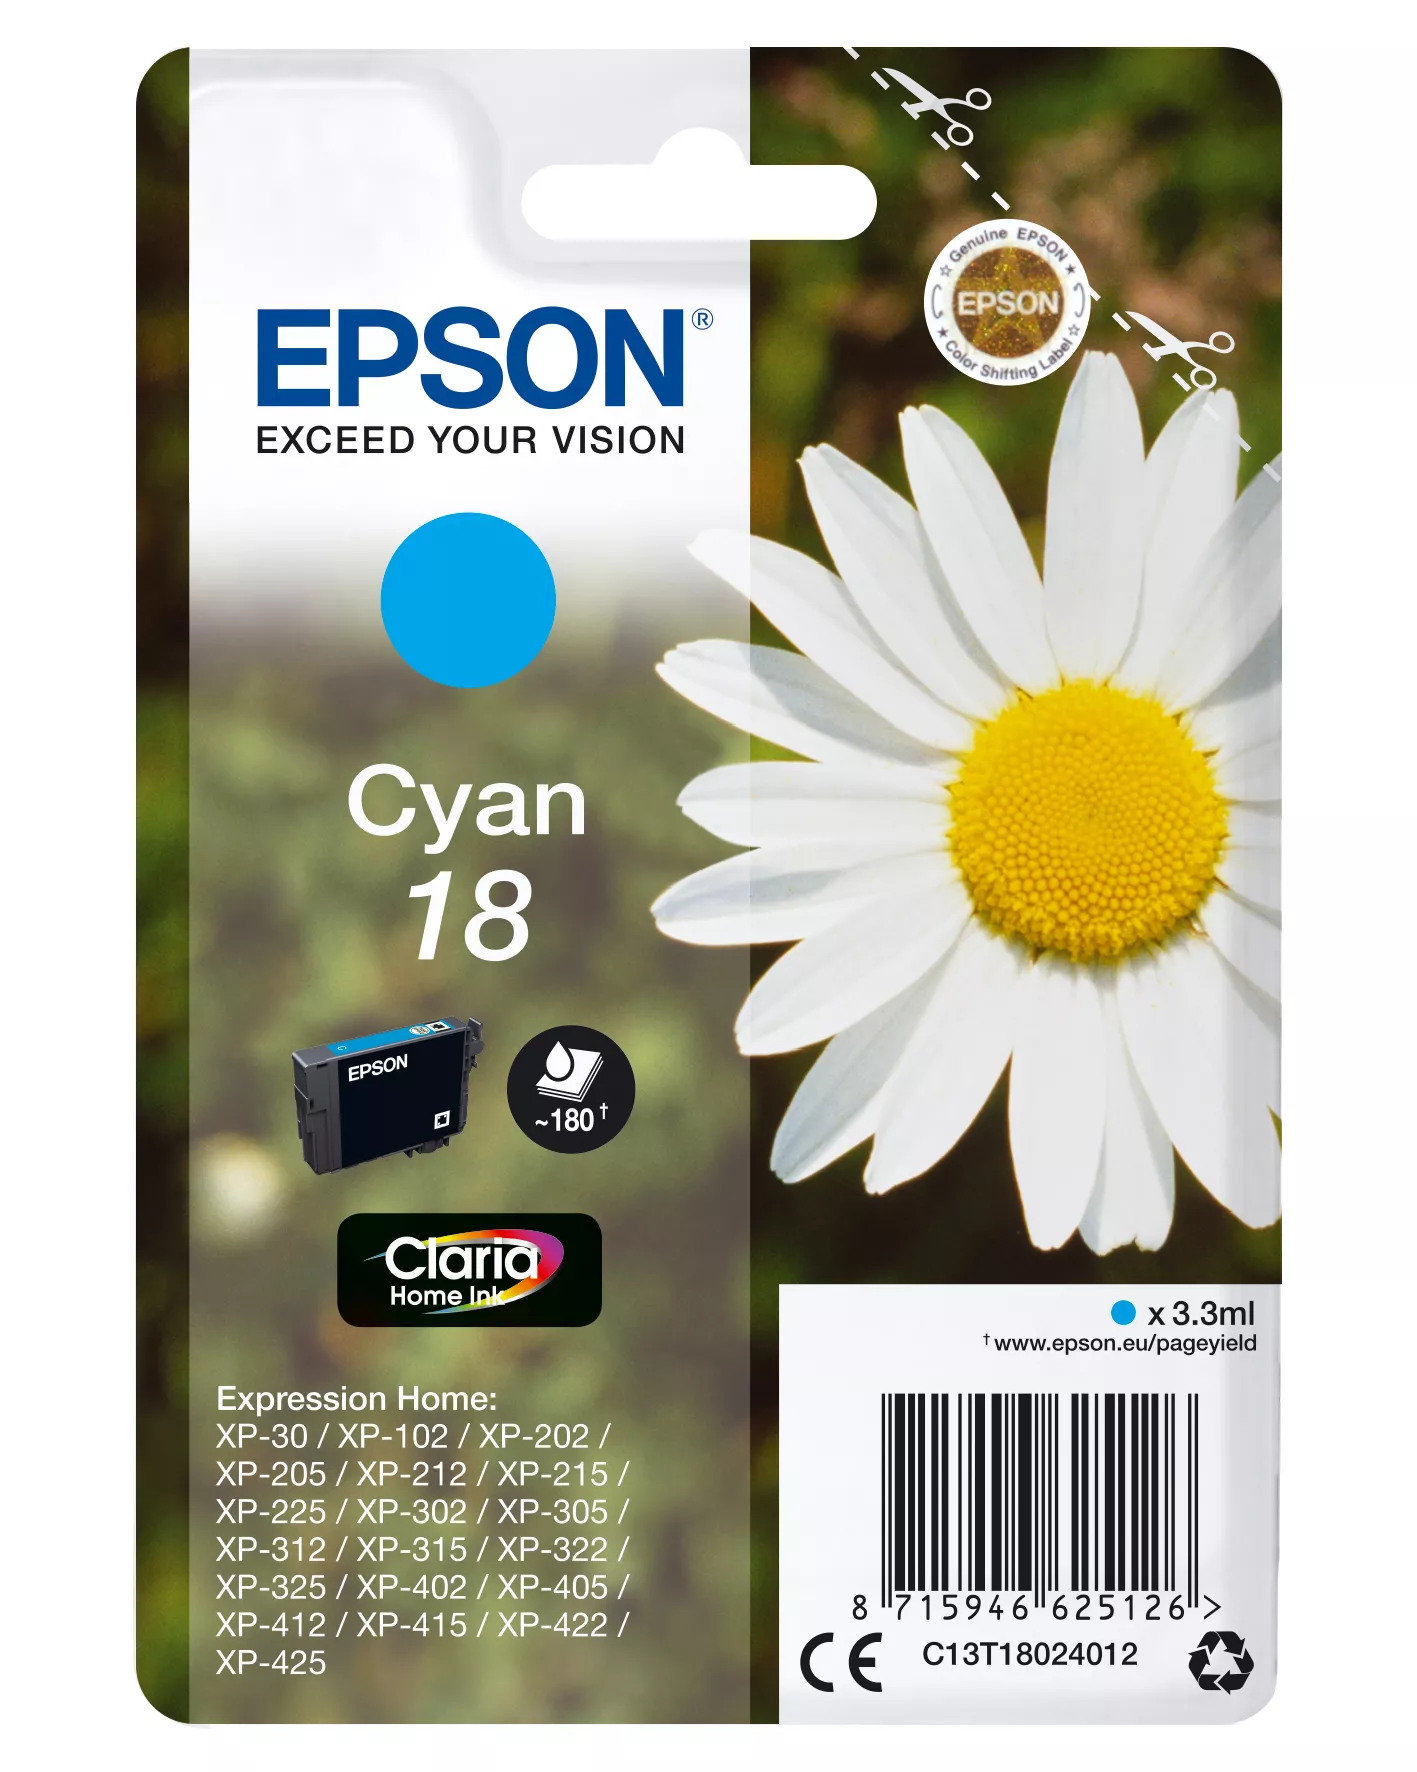 Achat EPSON 18 cartouche dencre cyan capacité standard 3.3ml sur hello RSE